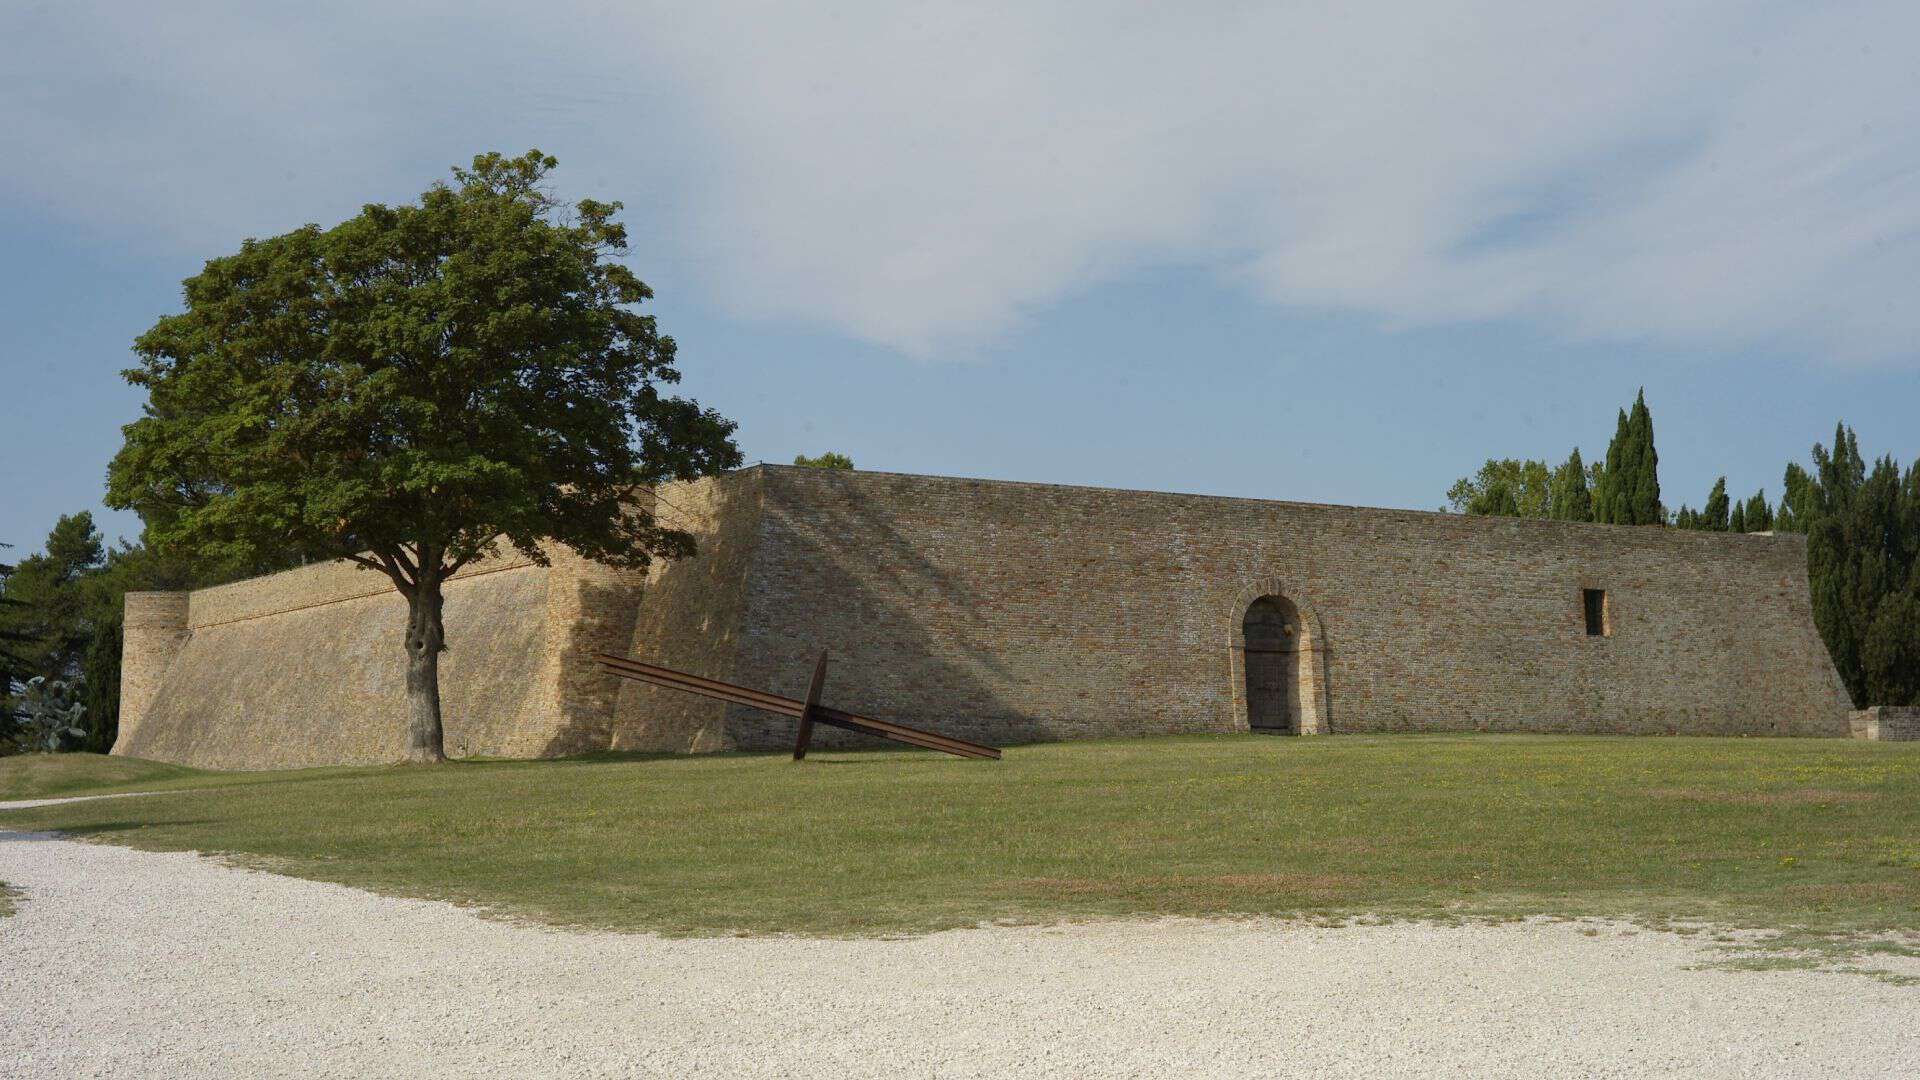 Eingang zur Festung Albornoz (Bildquelle: Limoncellista)